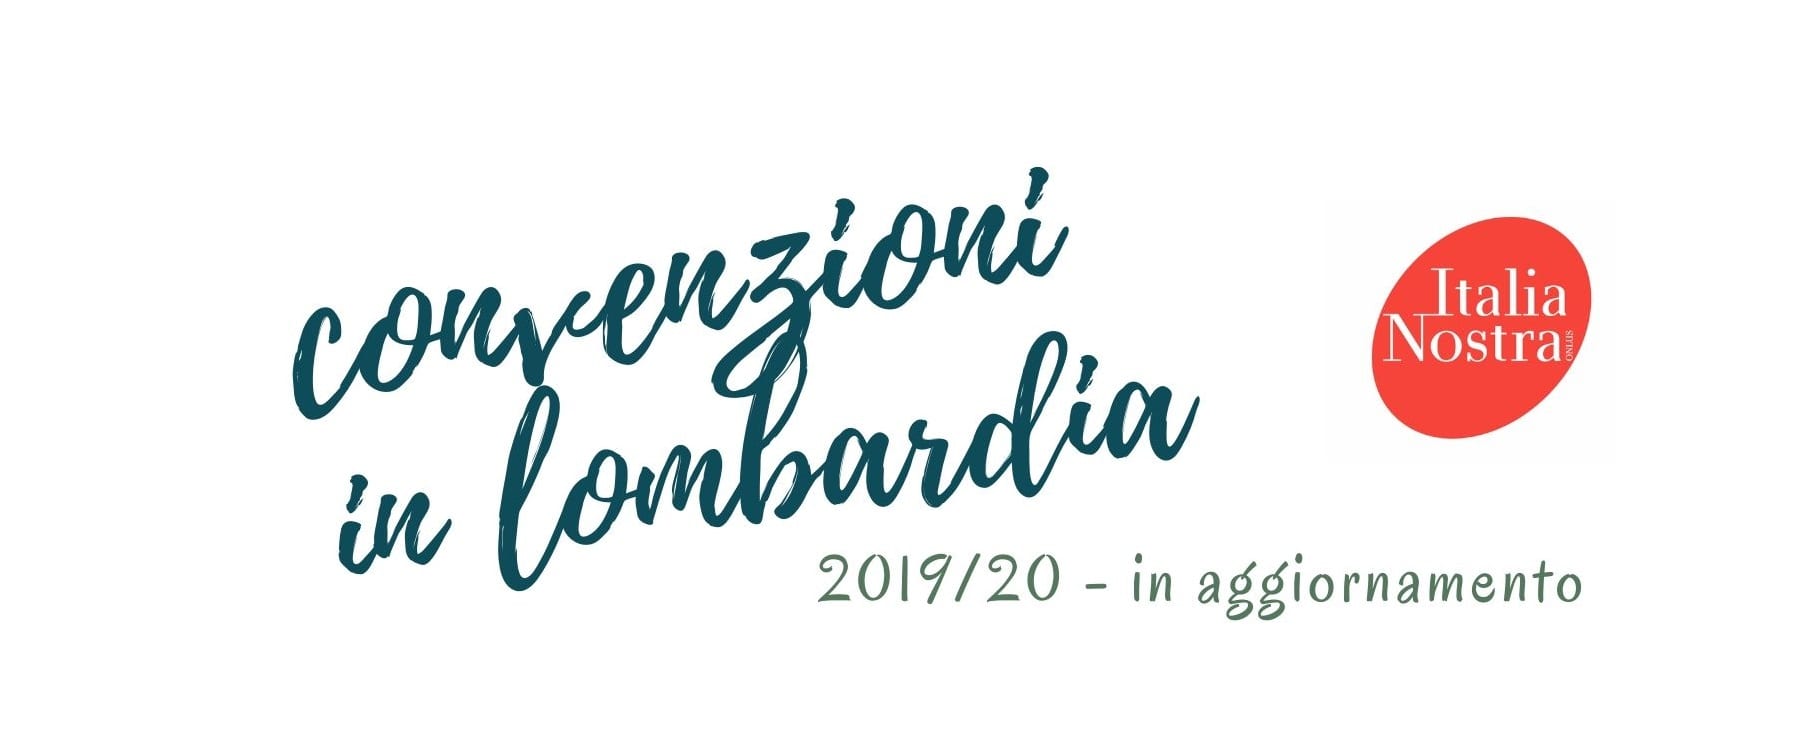 Convenzioni Italia Nostra sezione Lombardia